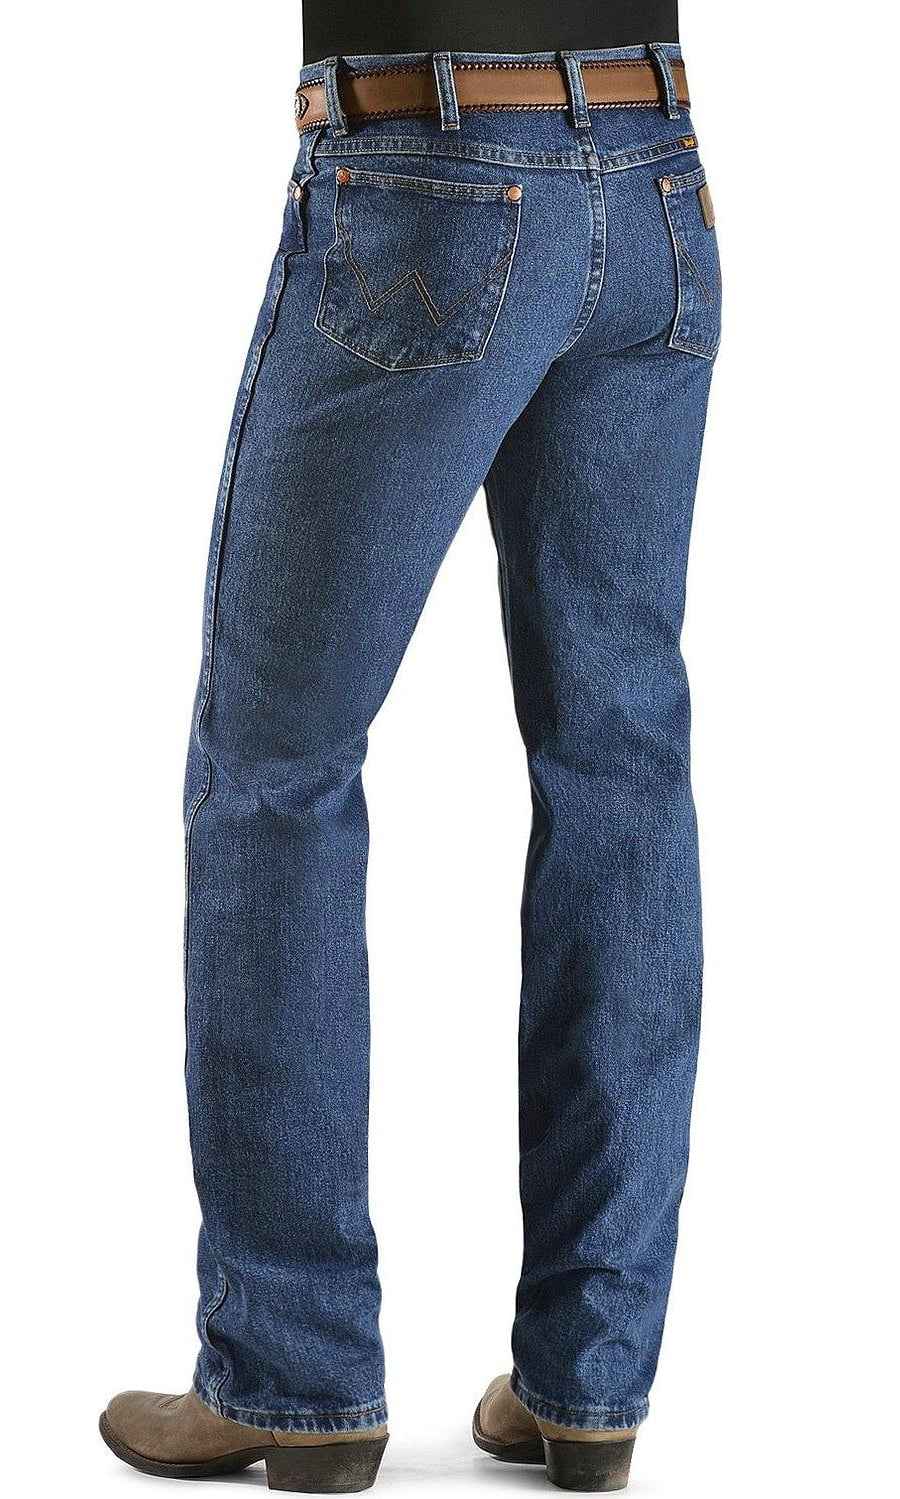 NWT Wrangler Rockabilly Raw Dark Wash Denim Slim Fit Cowboy Cut Jeans Size 28x36 